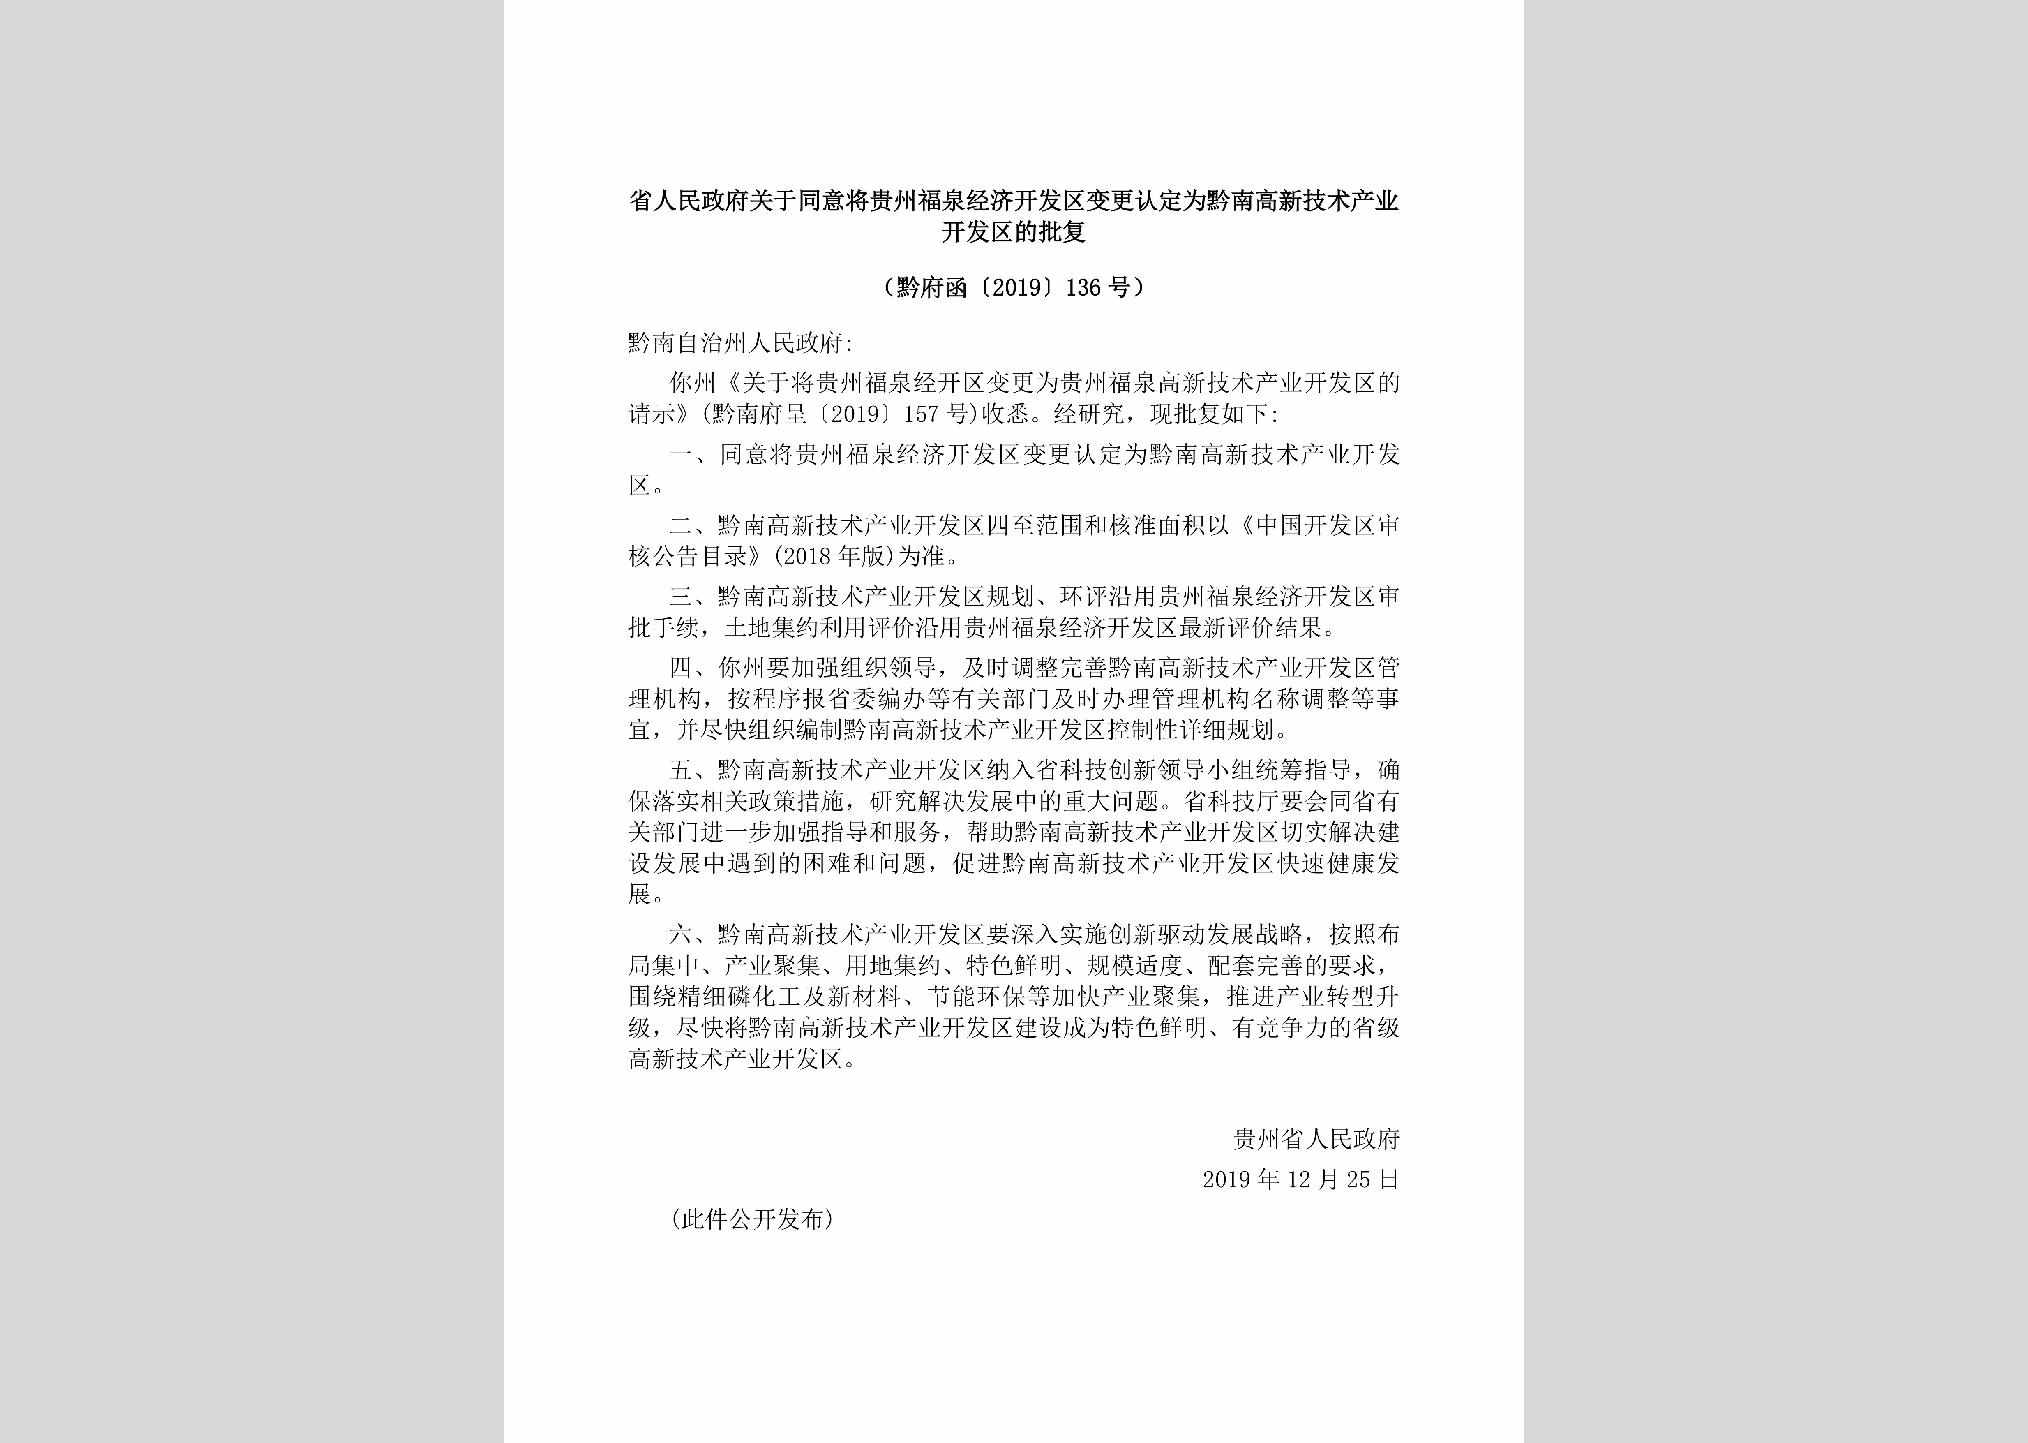 黔府函[2019]136号：省人民政府关于同意将贵州福泉经济开发区变更认定为黔南高新技术产业开发区的批复